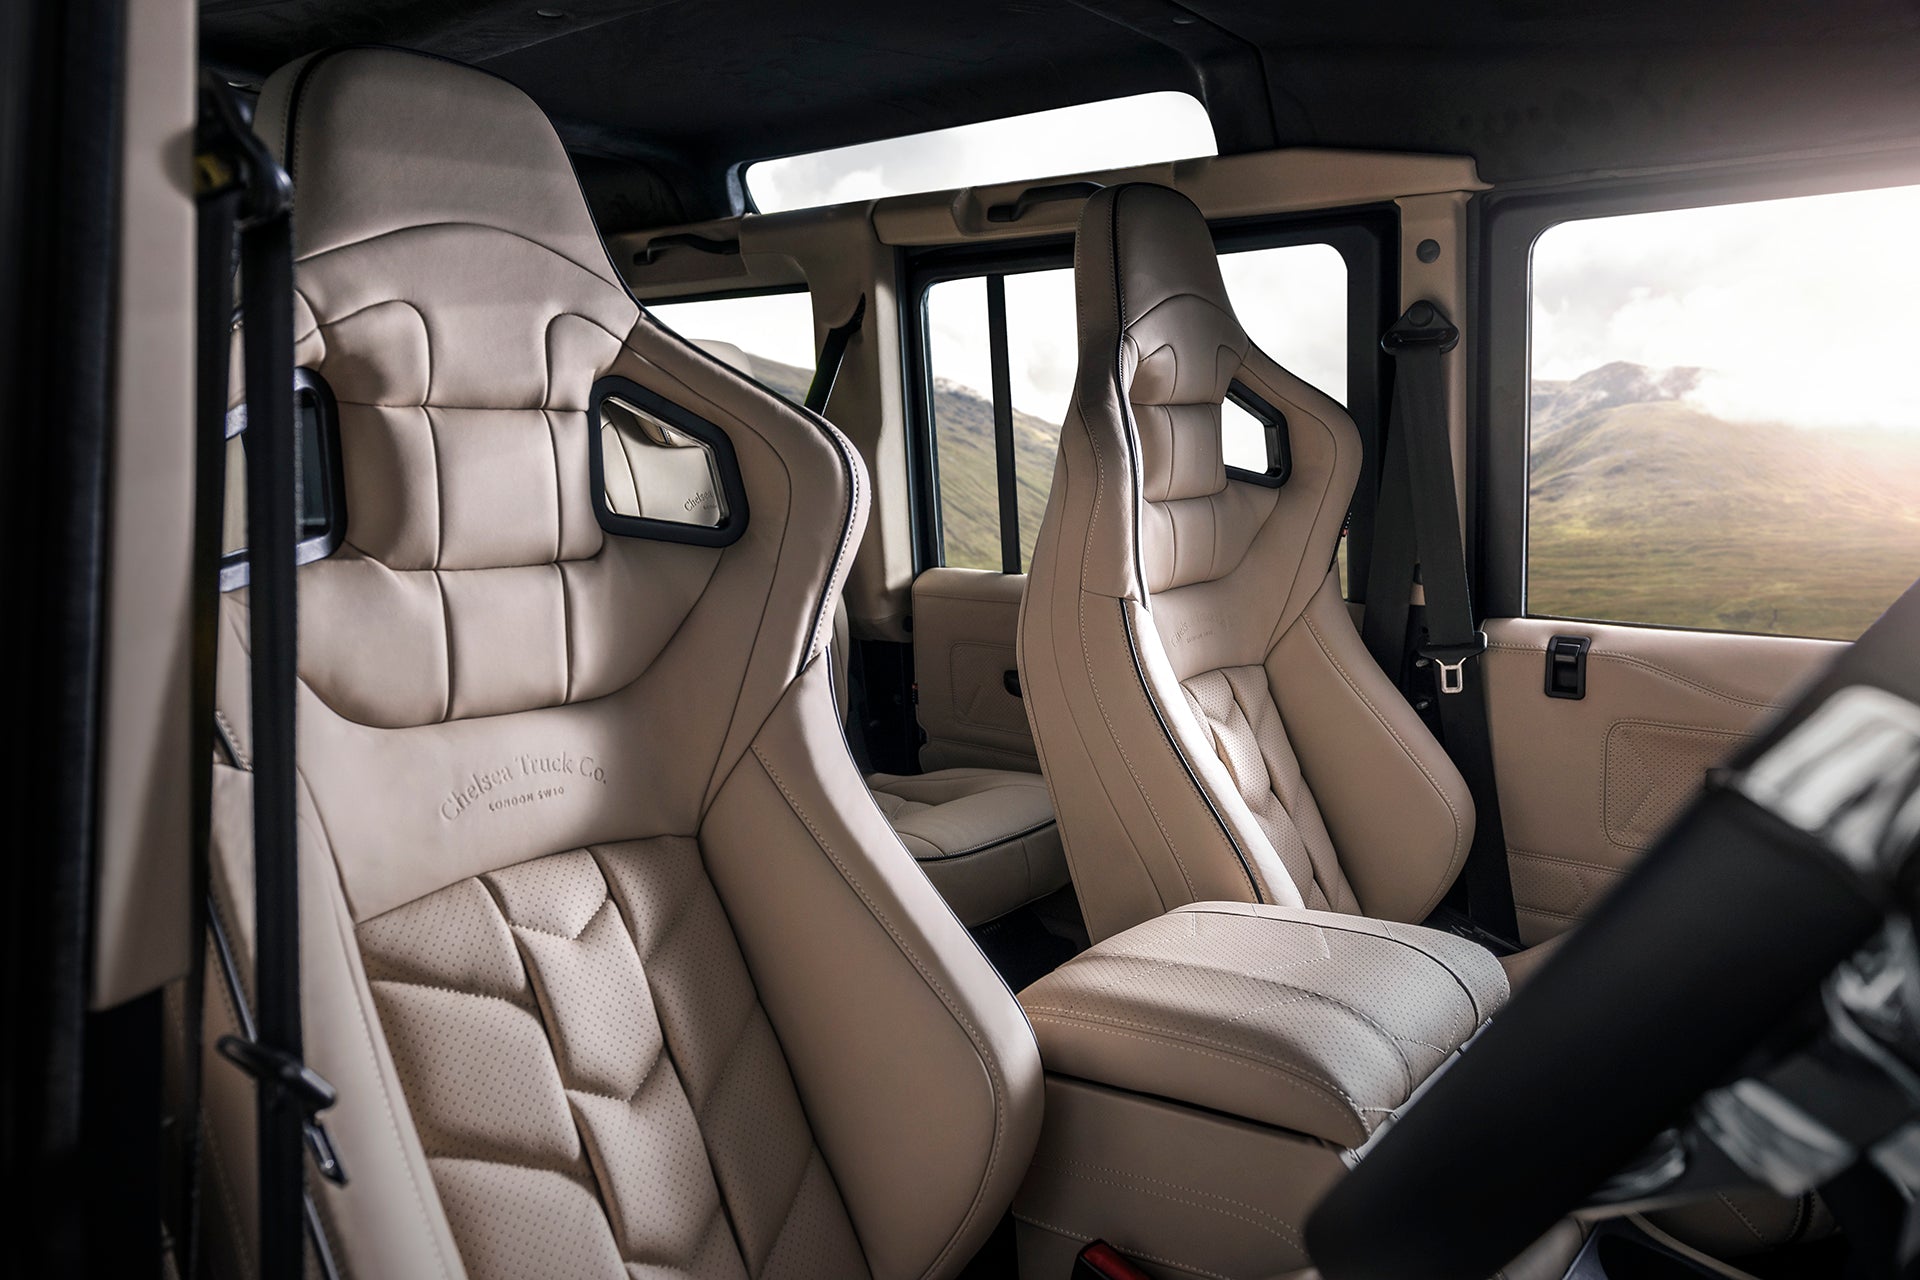 Classic Land Rover Defender 110 Leather Interior - Cream Edition